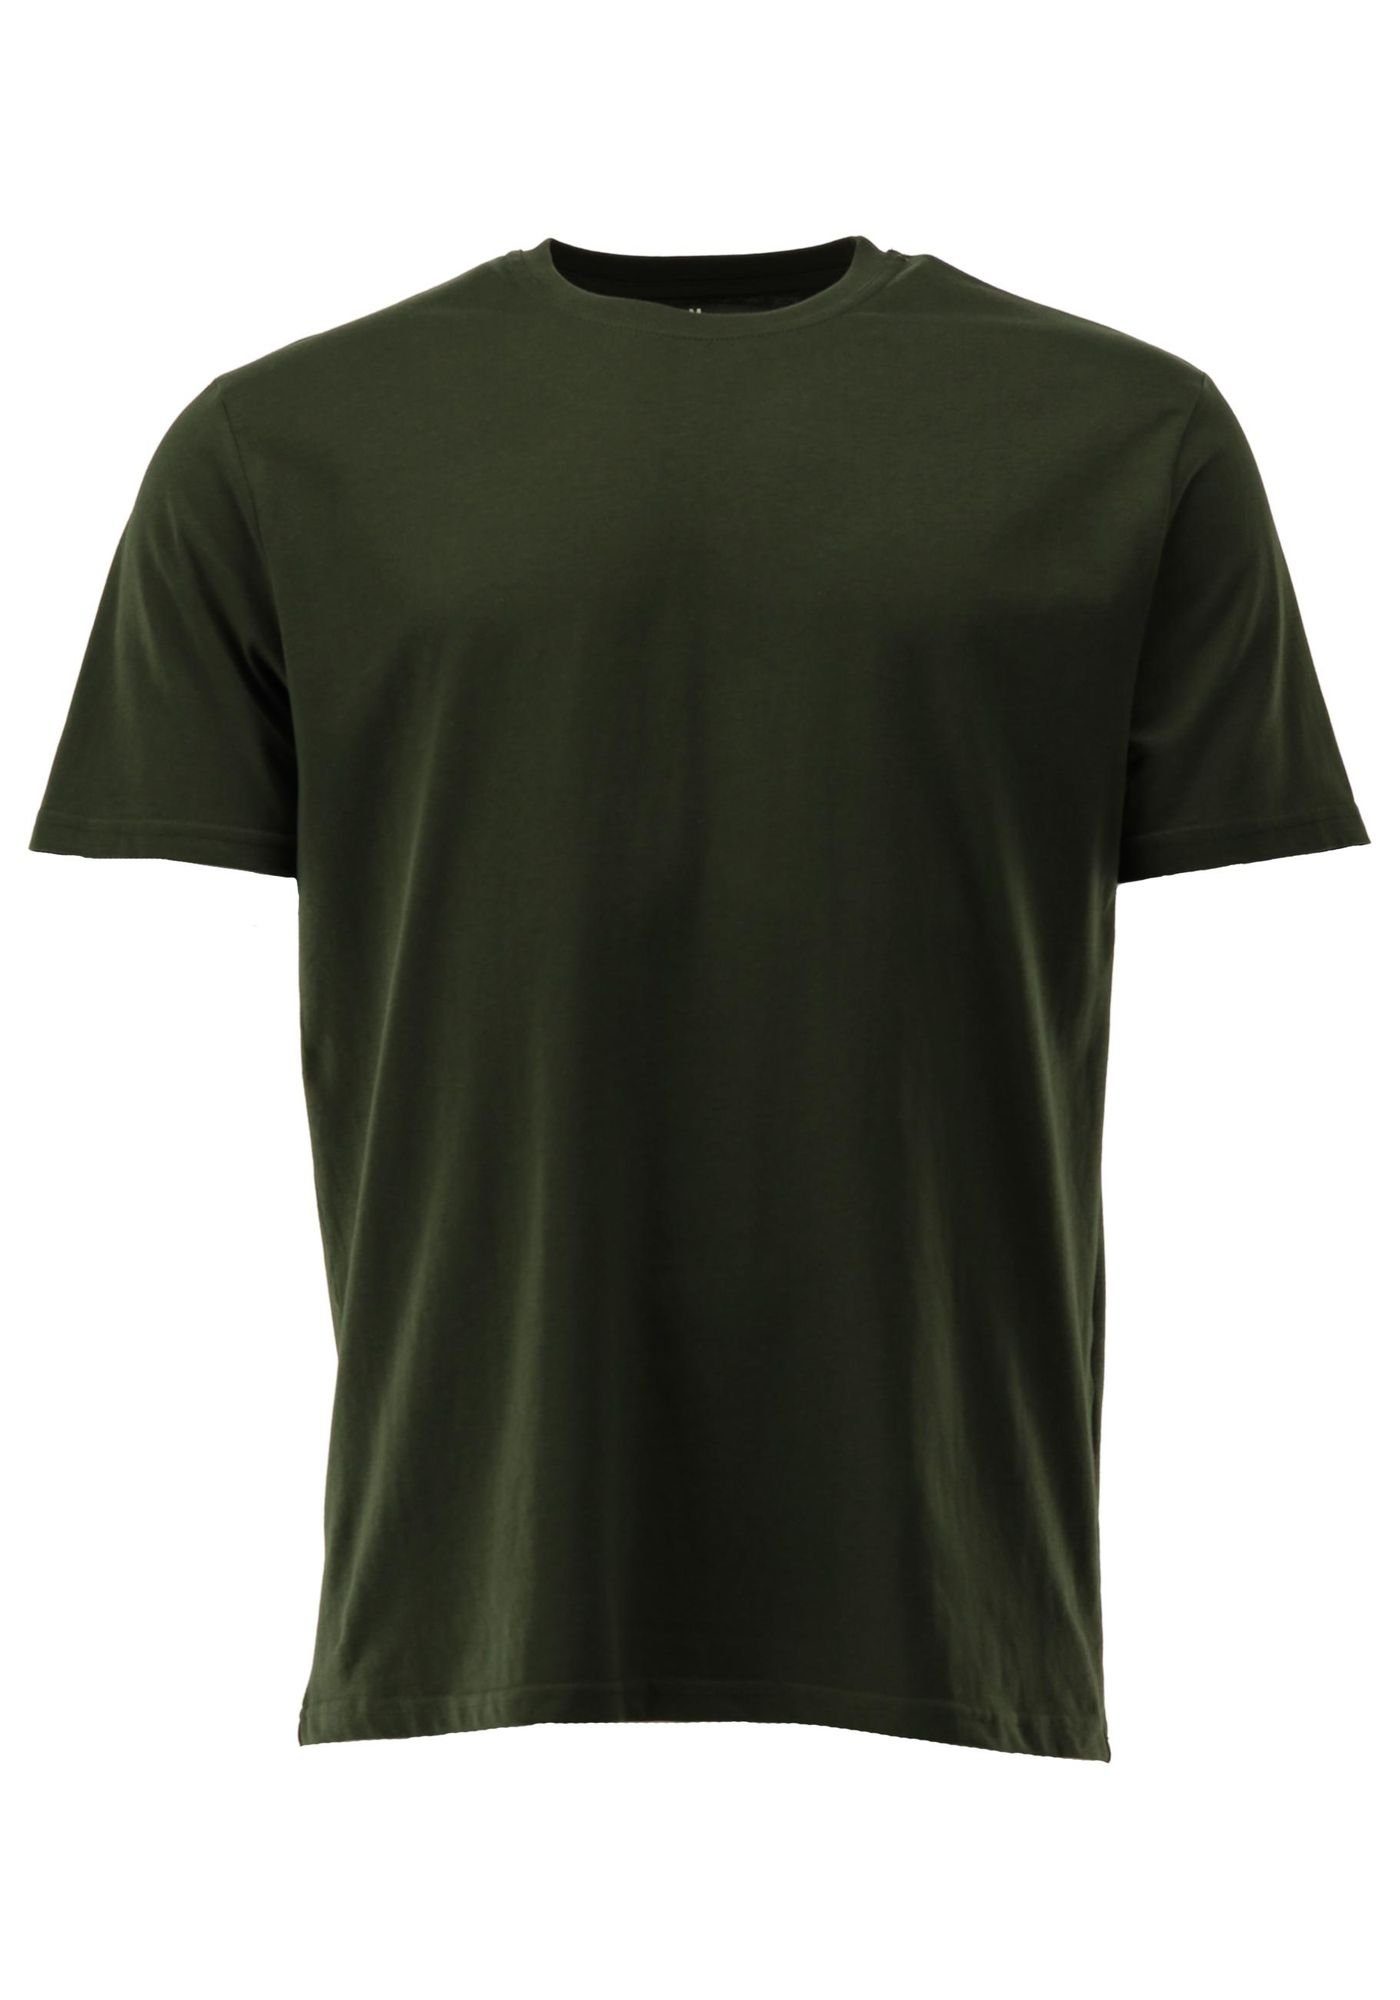 Rundhals 2er-Pack Shirt mit Bezuva T-Shirt im OS-Trachten